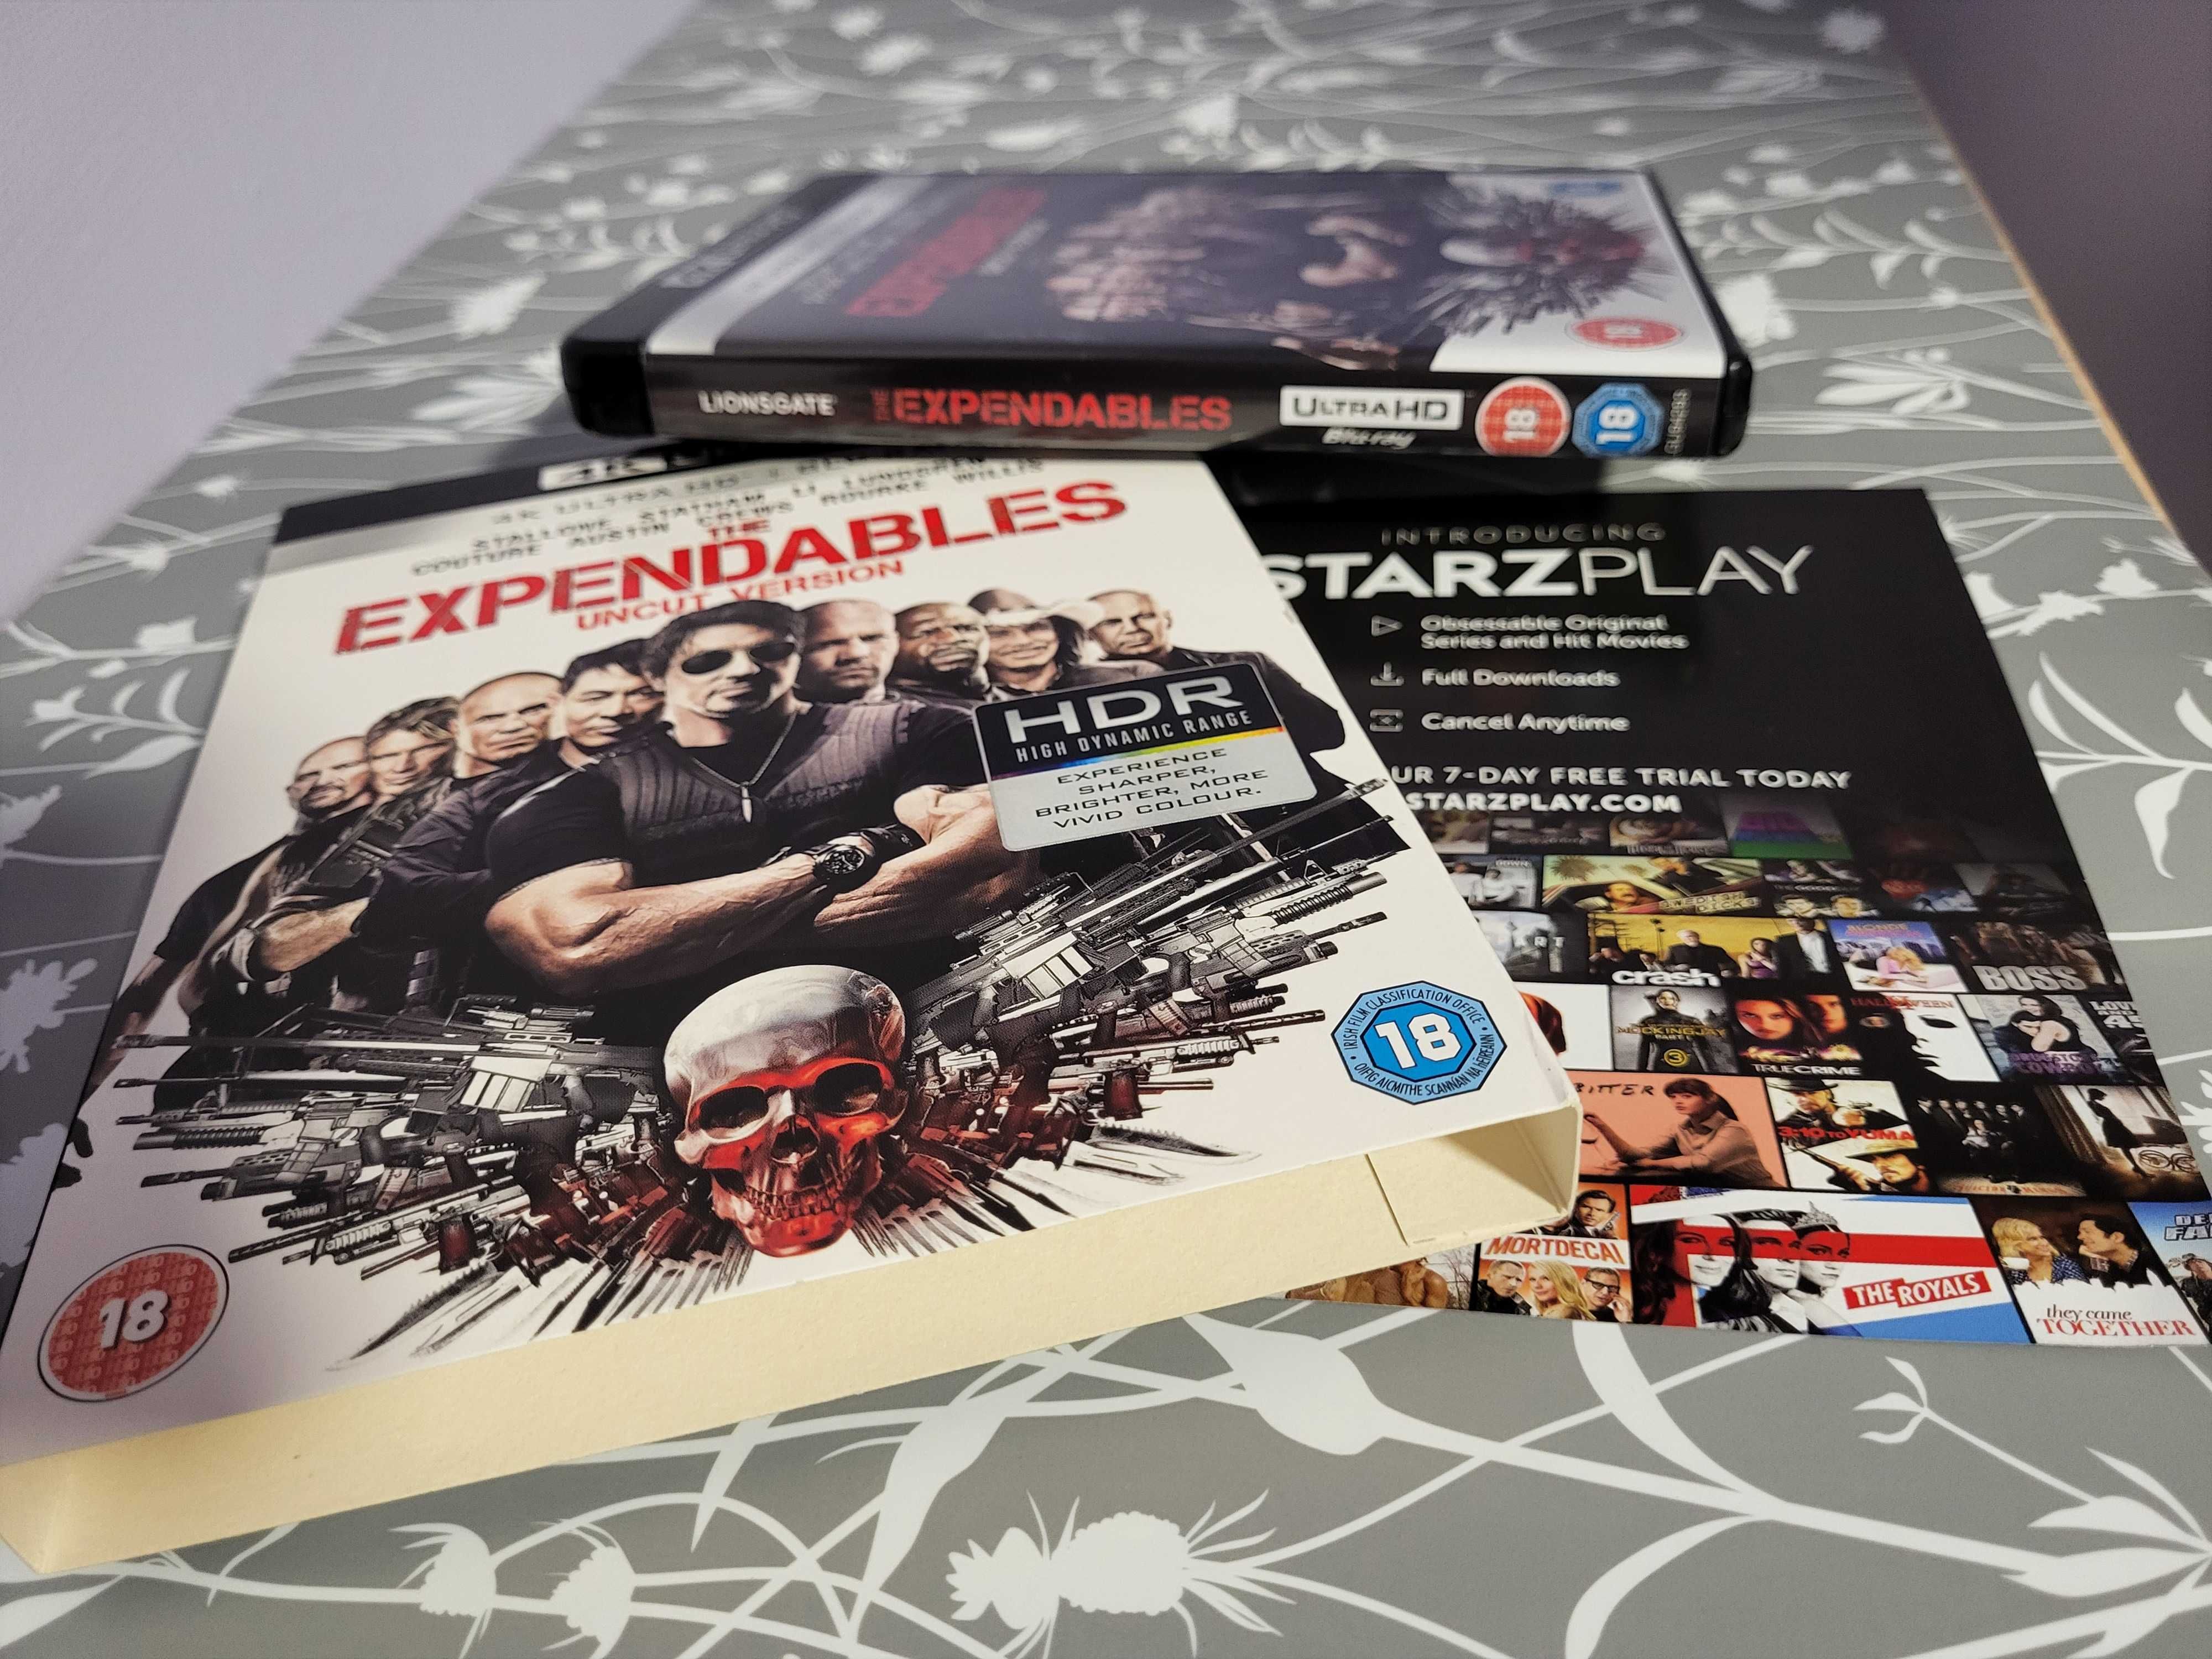 The Expendables płyta DVD 4K,Ultra HD + Blu-Ray sprzedam